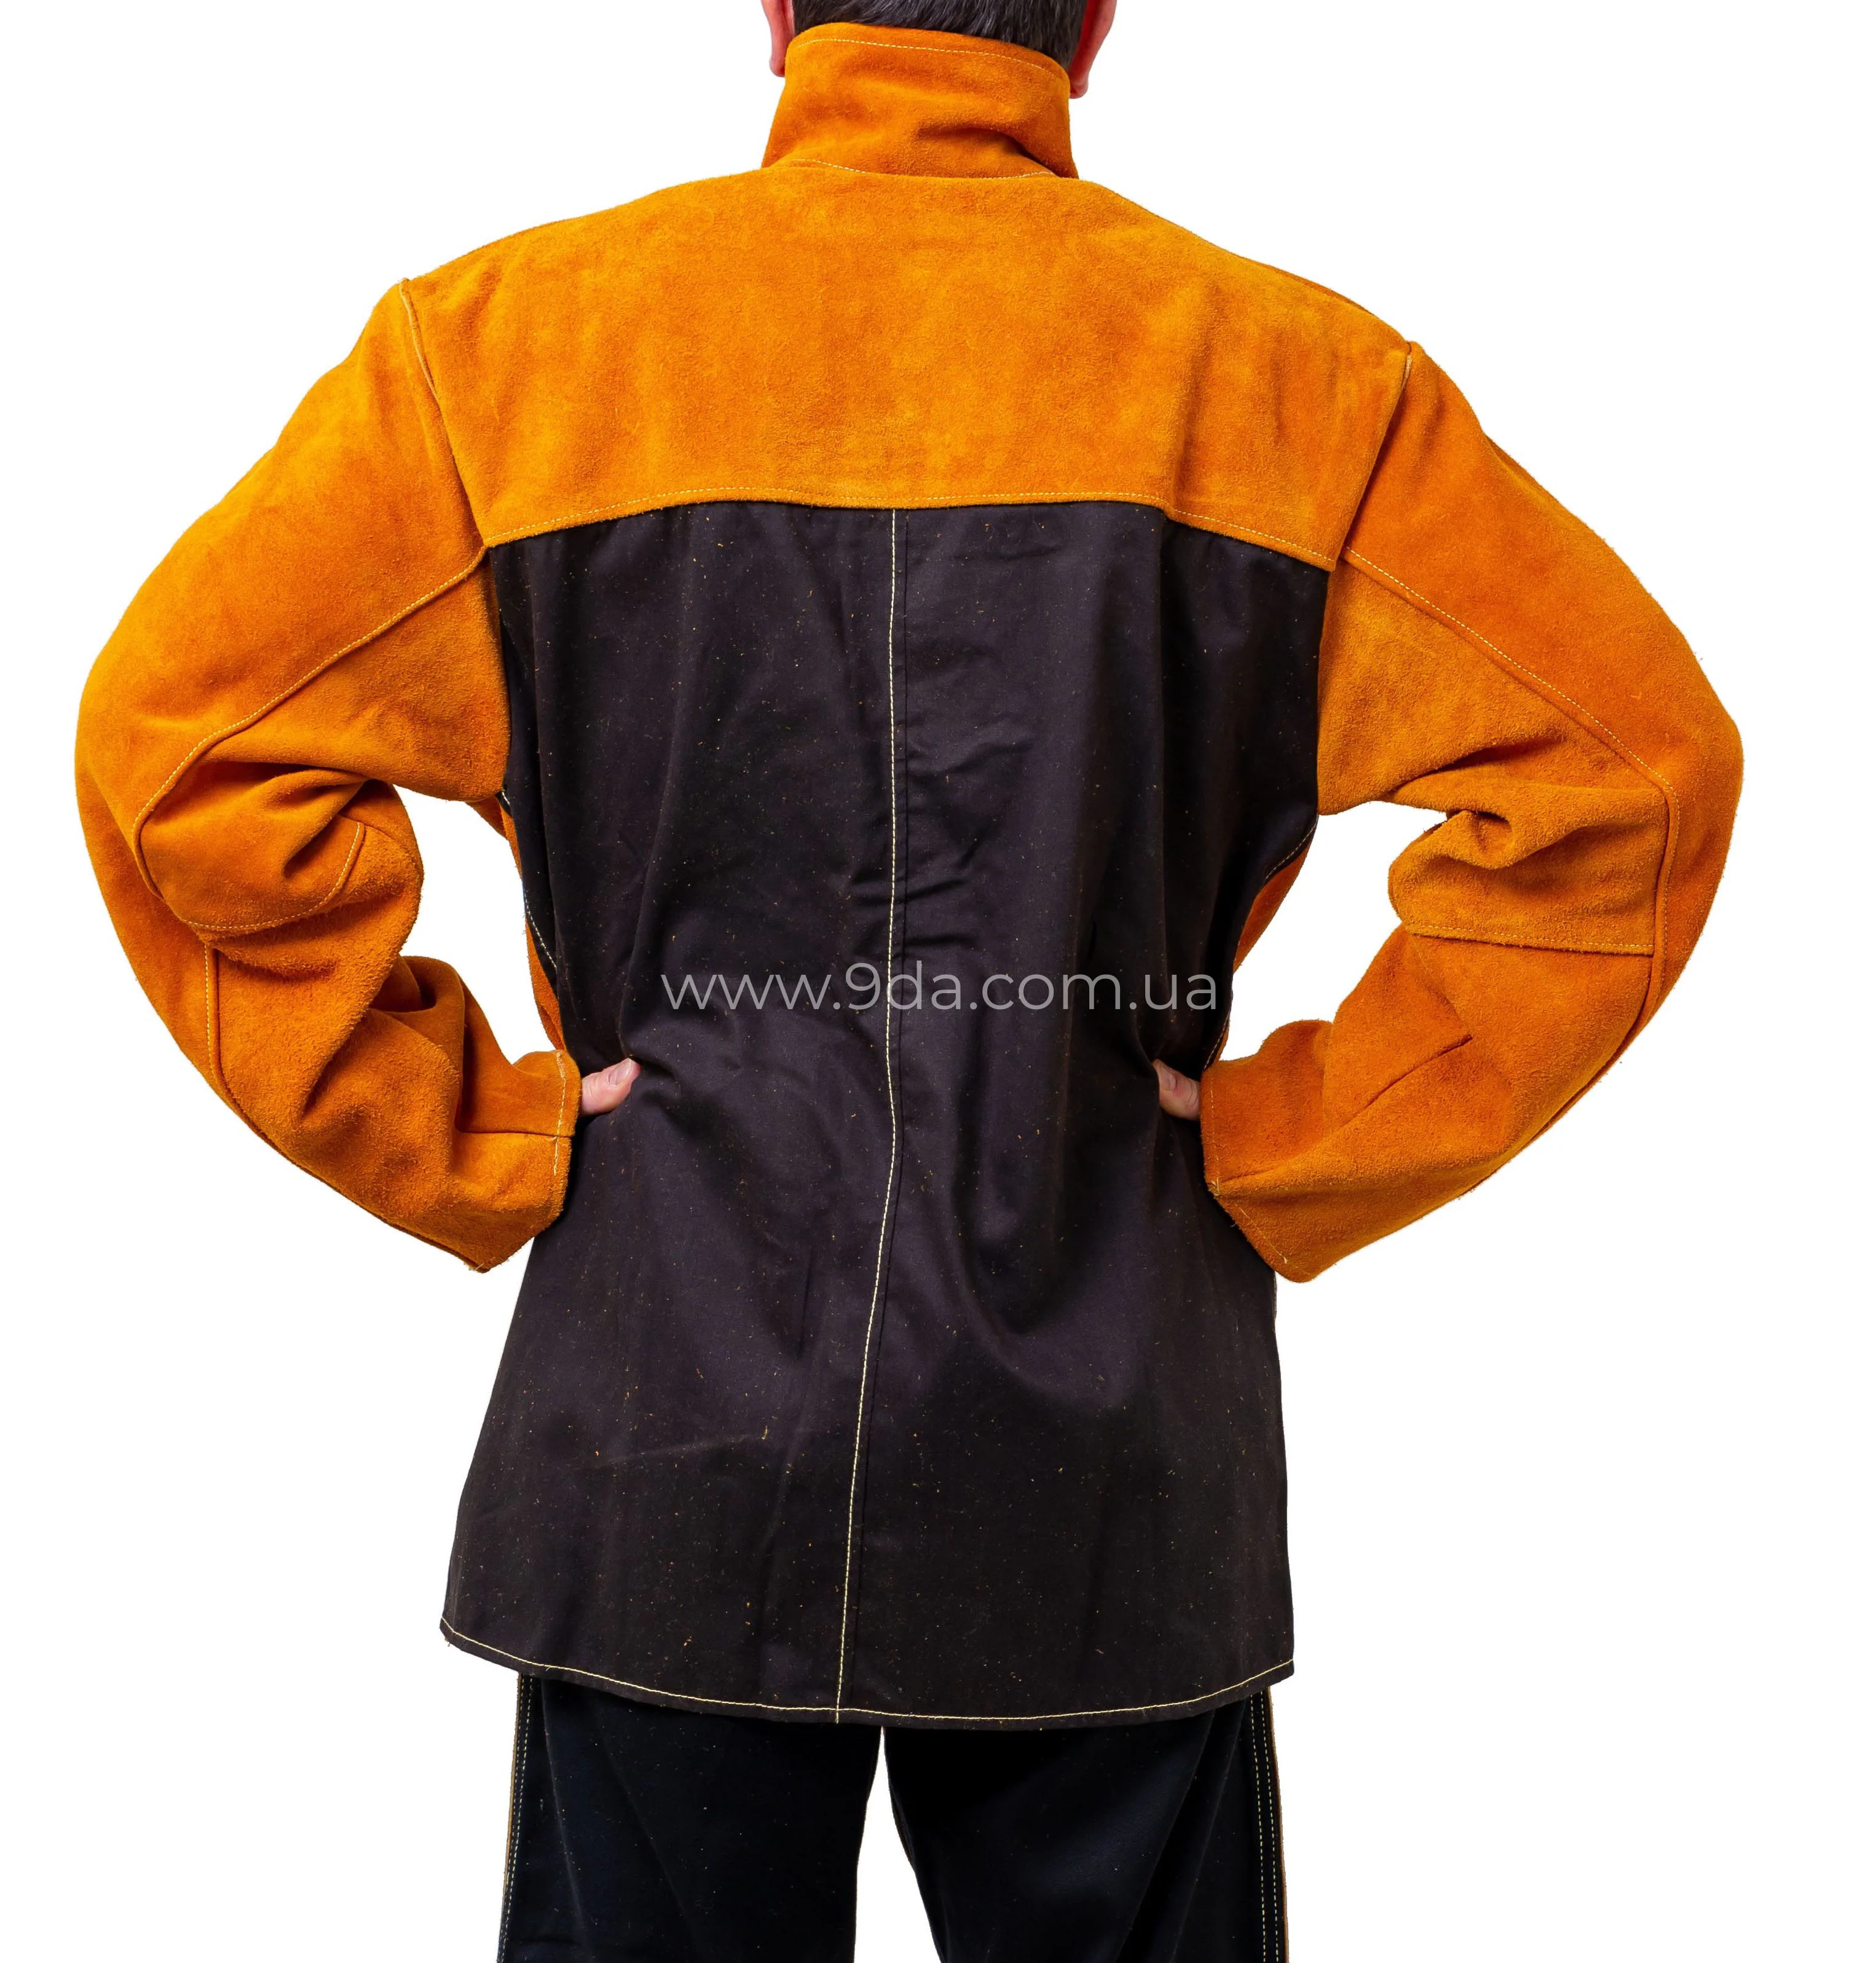 Куртка зварювальника, шкіряна, FR Front - Leather, Back Jacket Proban, size XXL - 5